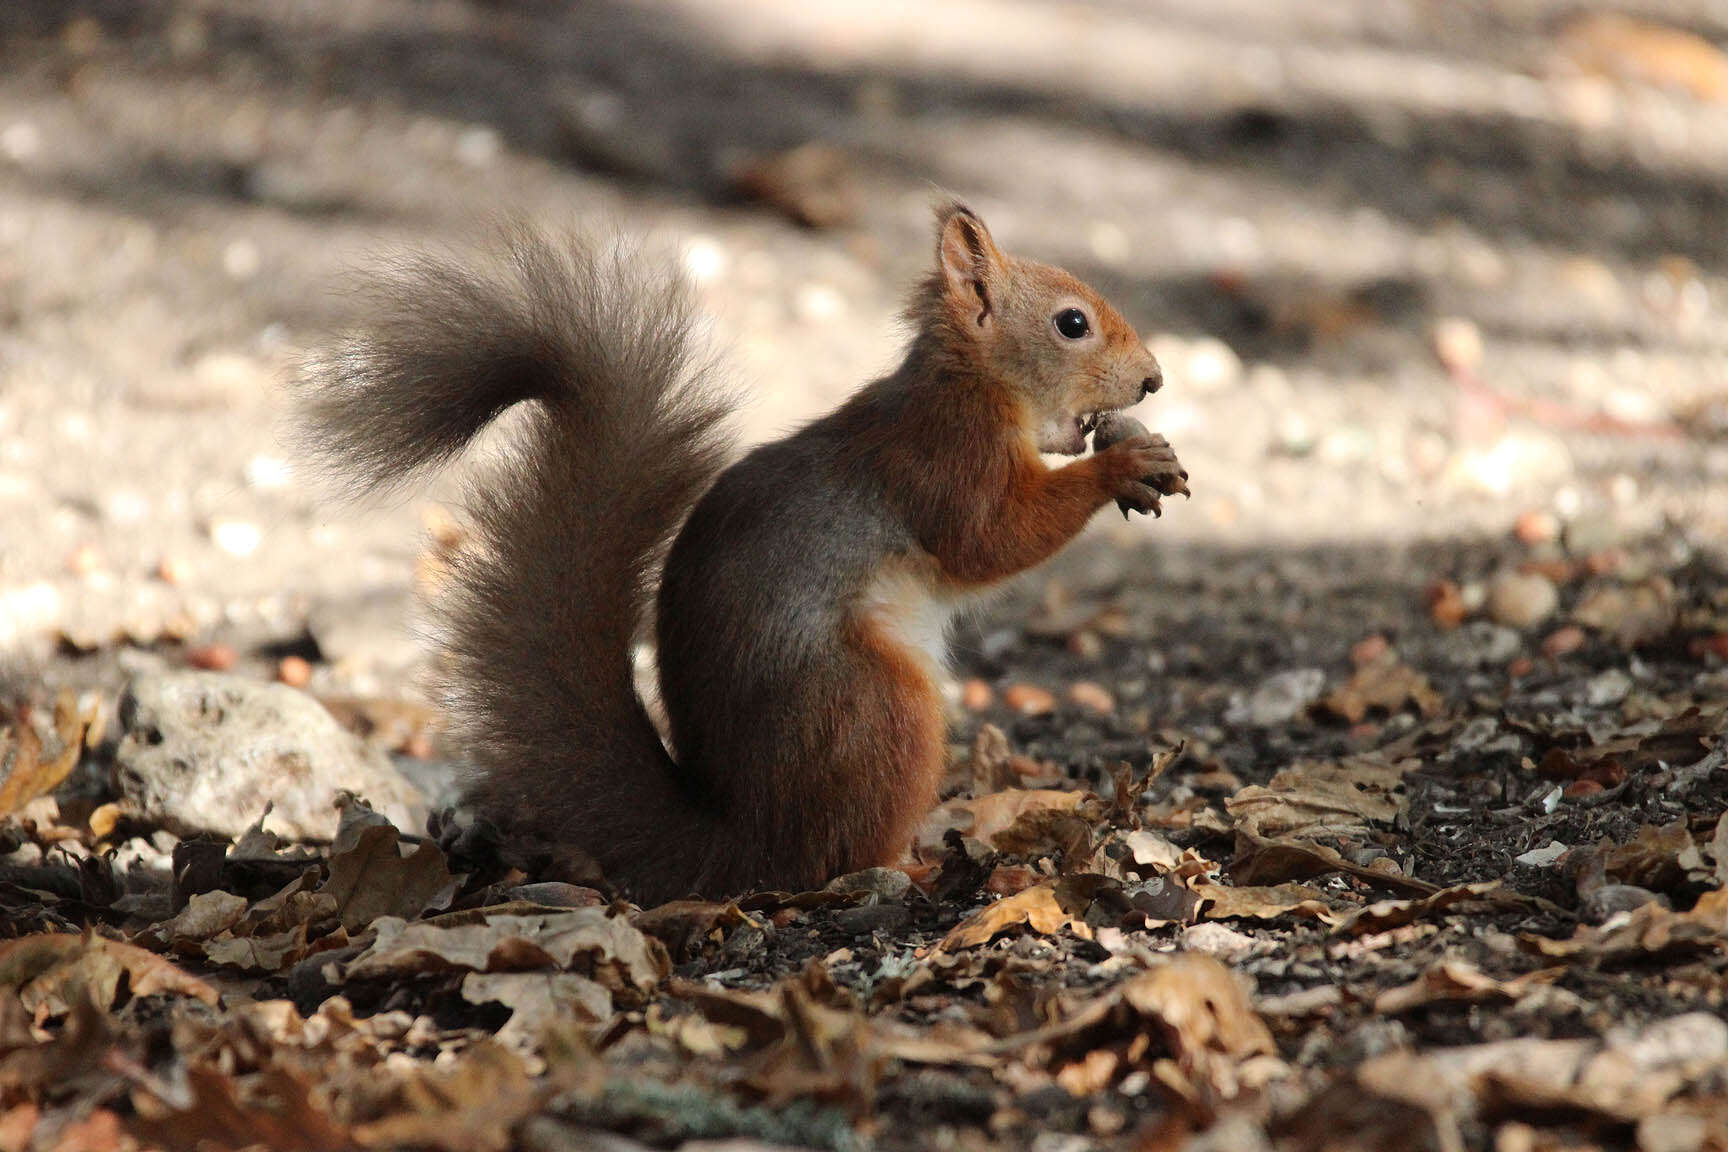 Image de écureuil, écureuil rouge